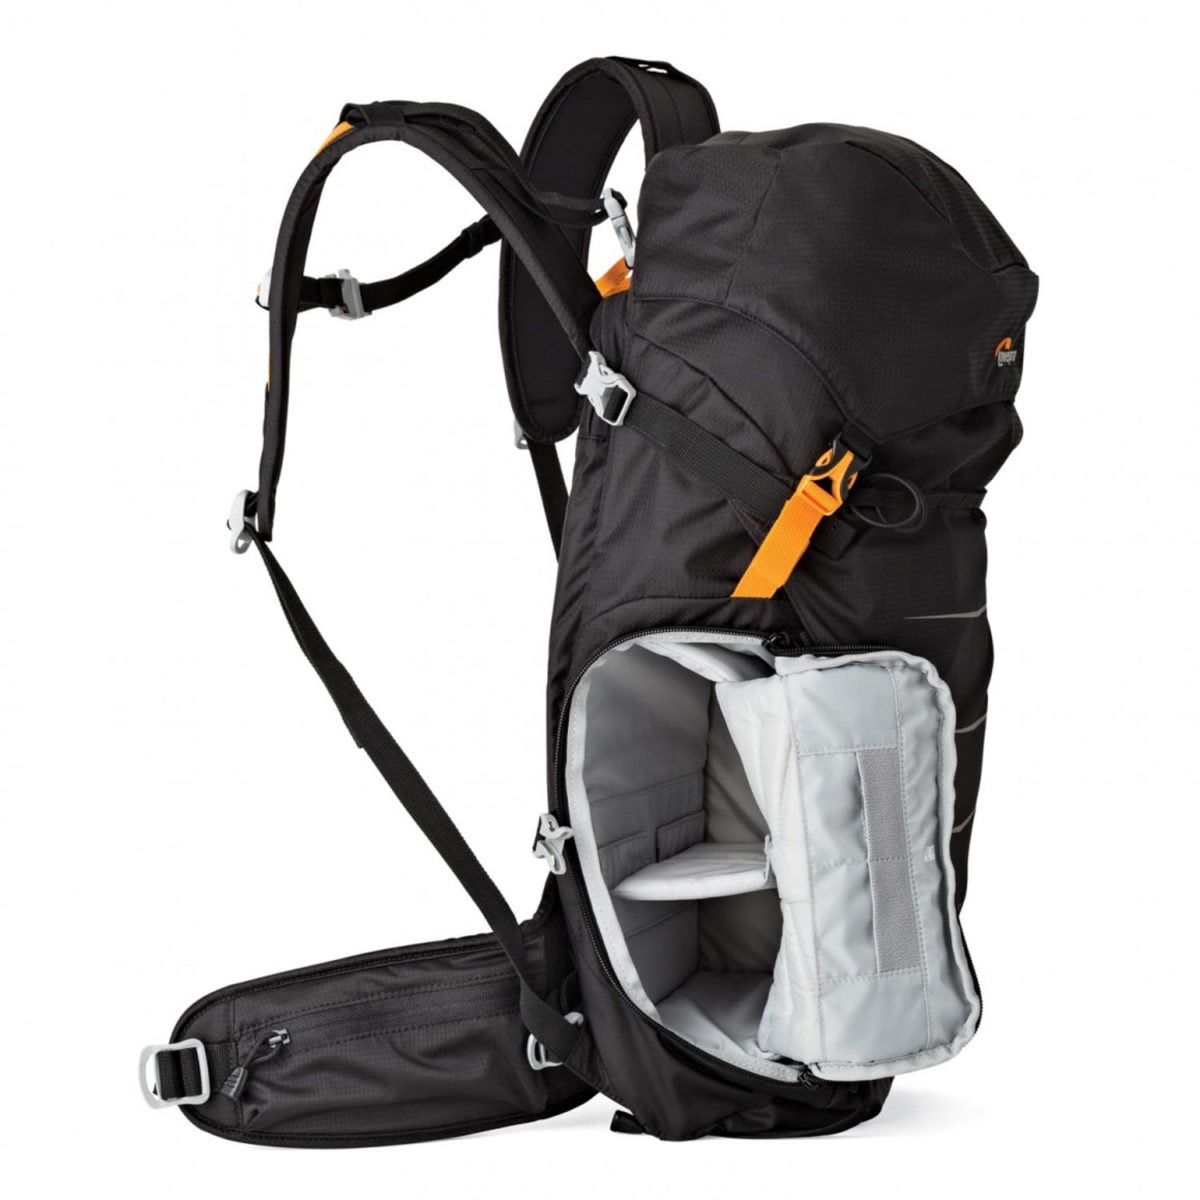 Lowepro photosport backpack